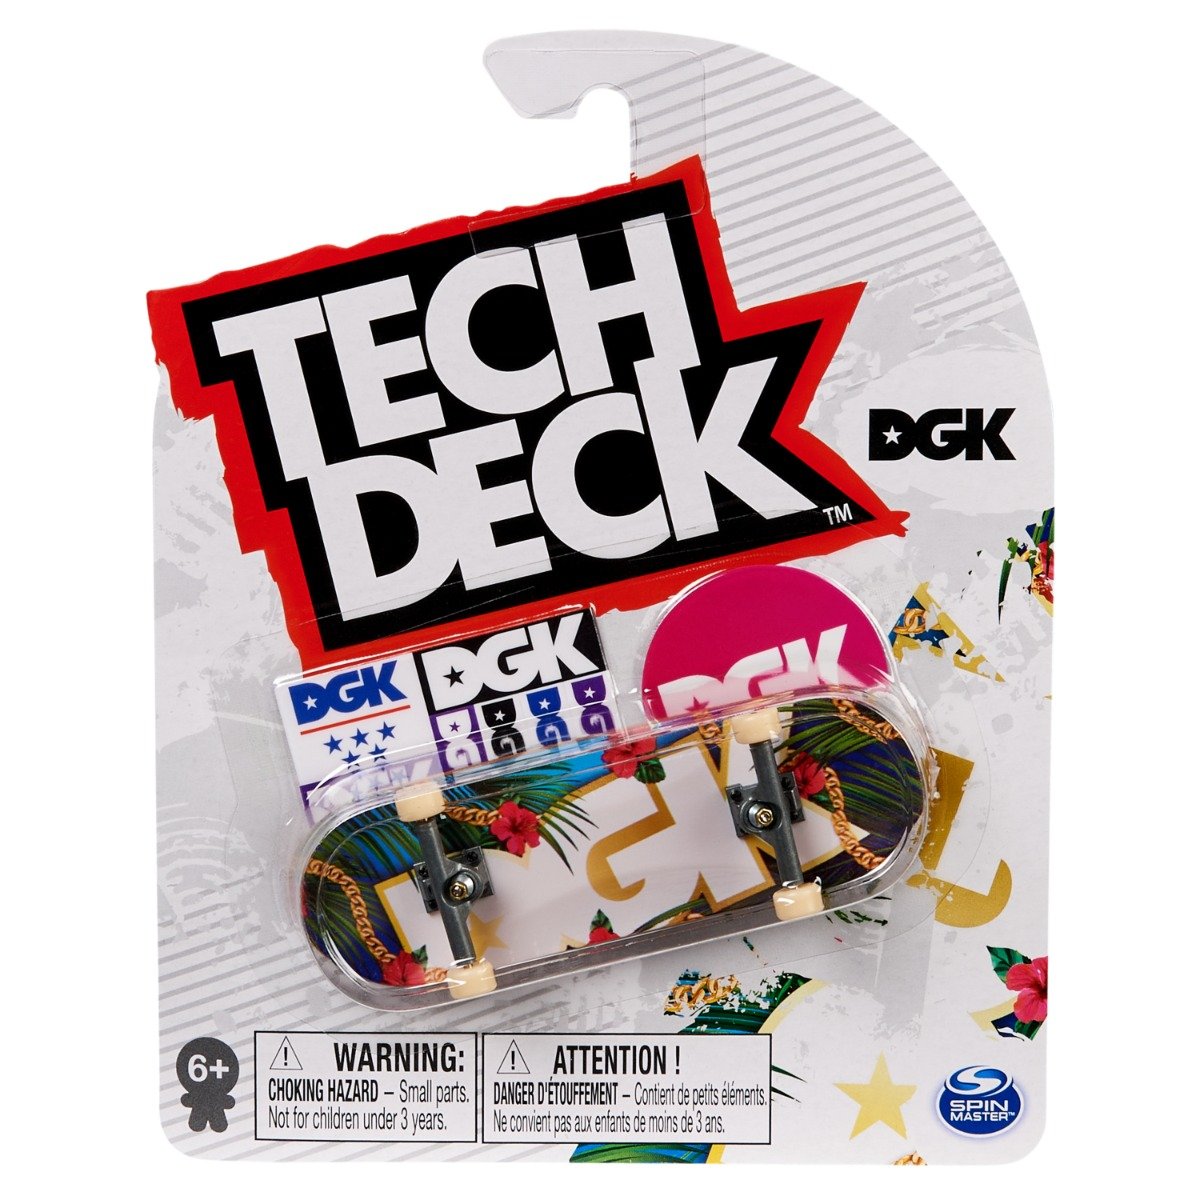 Mini placa skateboard Tech Deck, DGK, 20142049